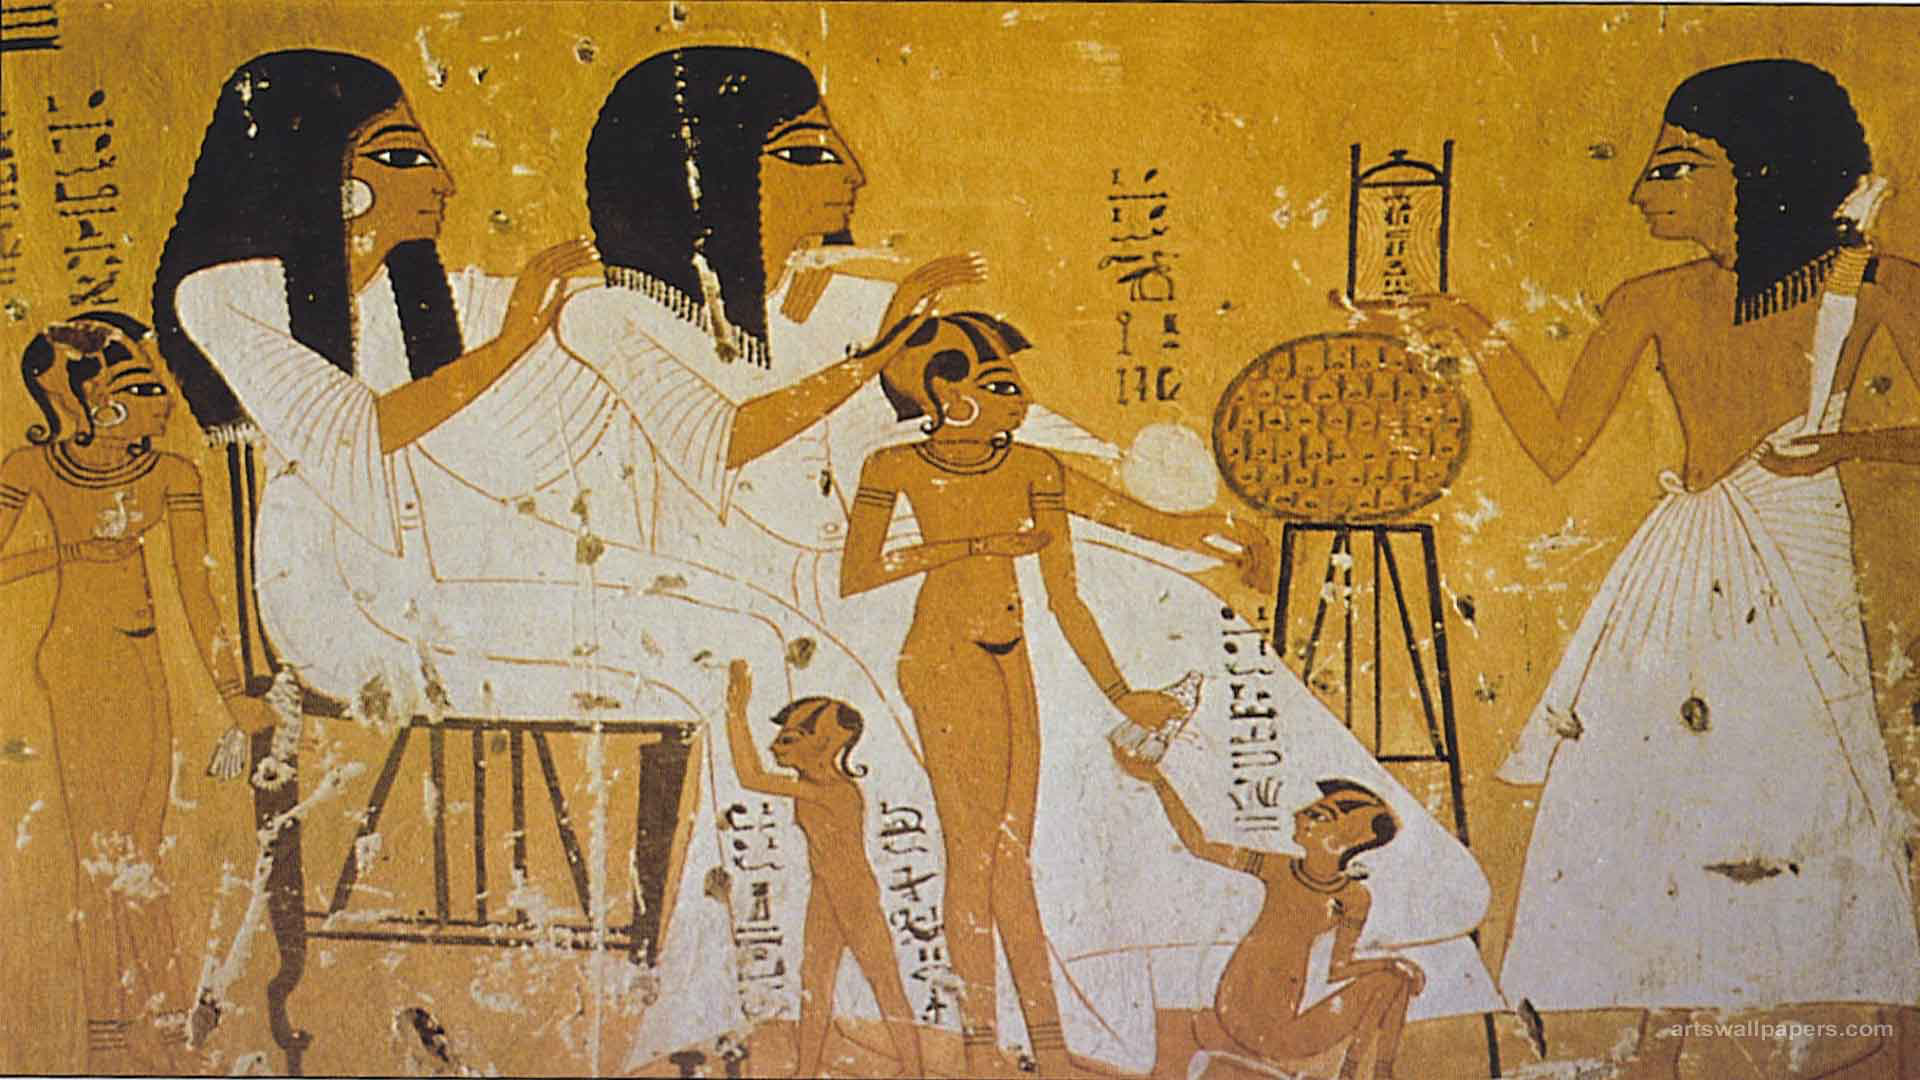 Vài sự thật hay ho về Ai Cập cổ đại: Khám thai bằng hạt lúa, quẩy khỏa thân và trả lương bằng bia - Ảnh 2.